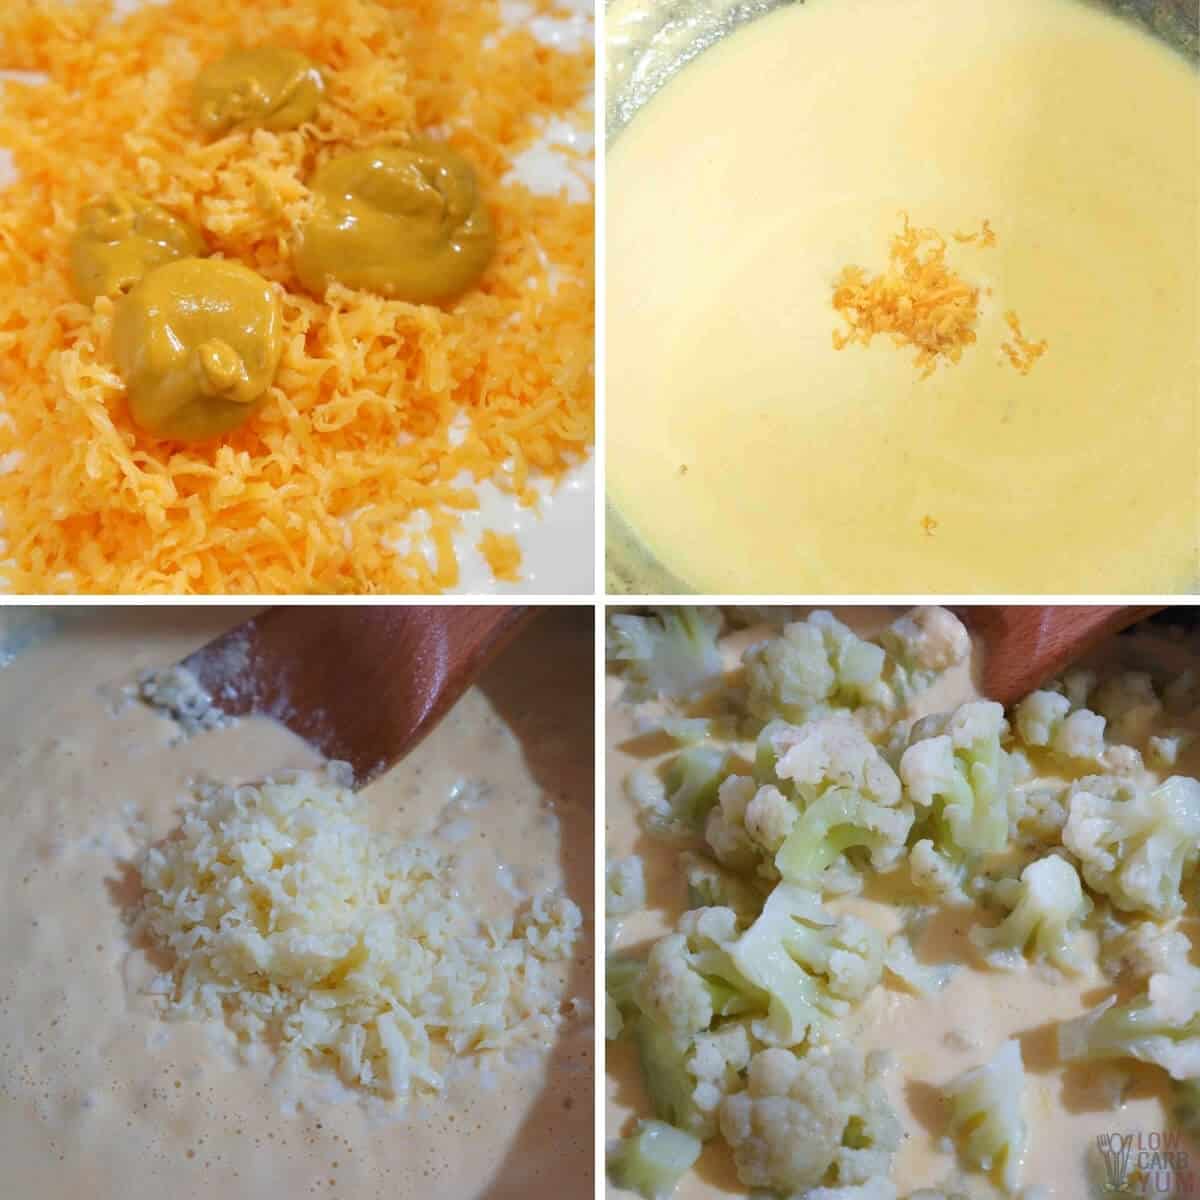 preparing the cauliflower cheese sauce